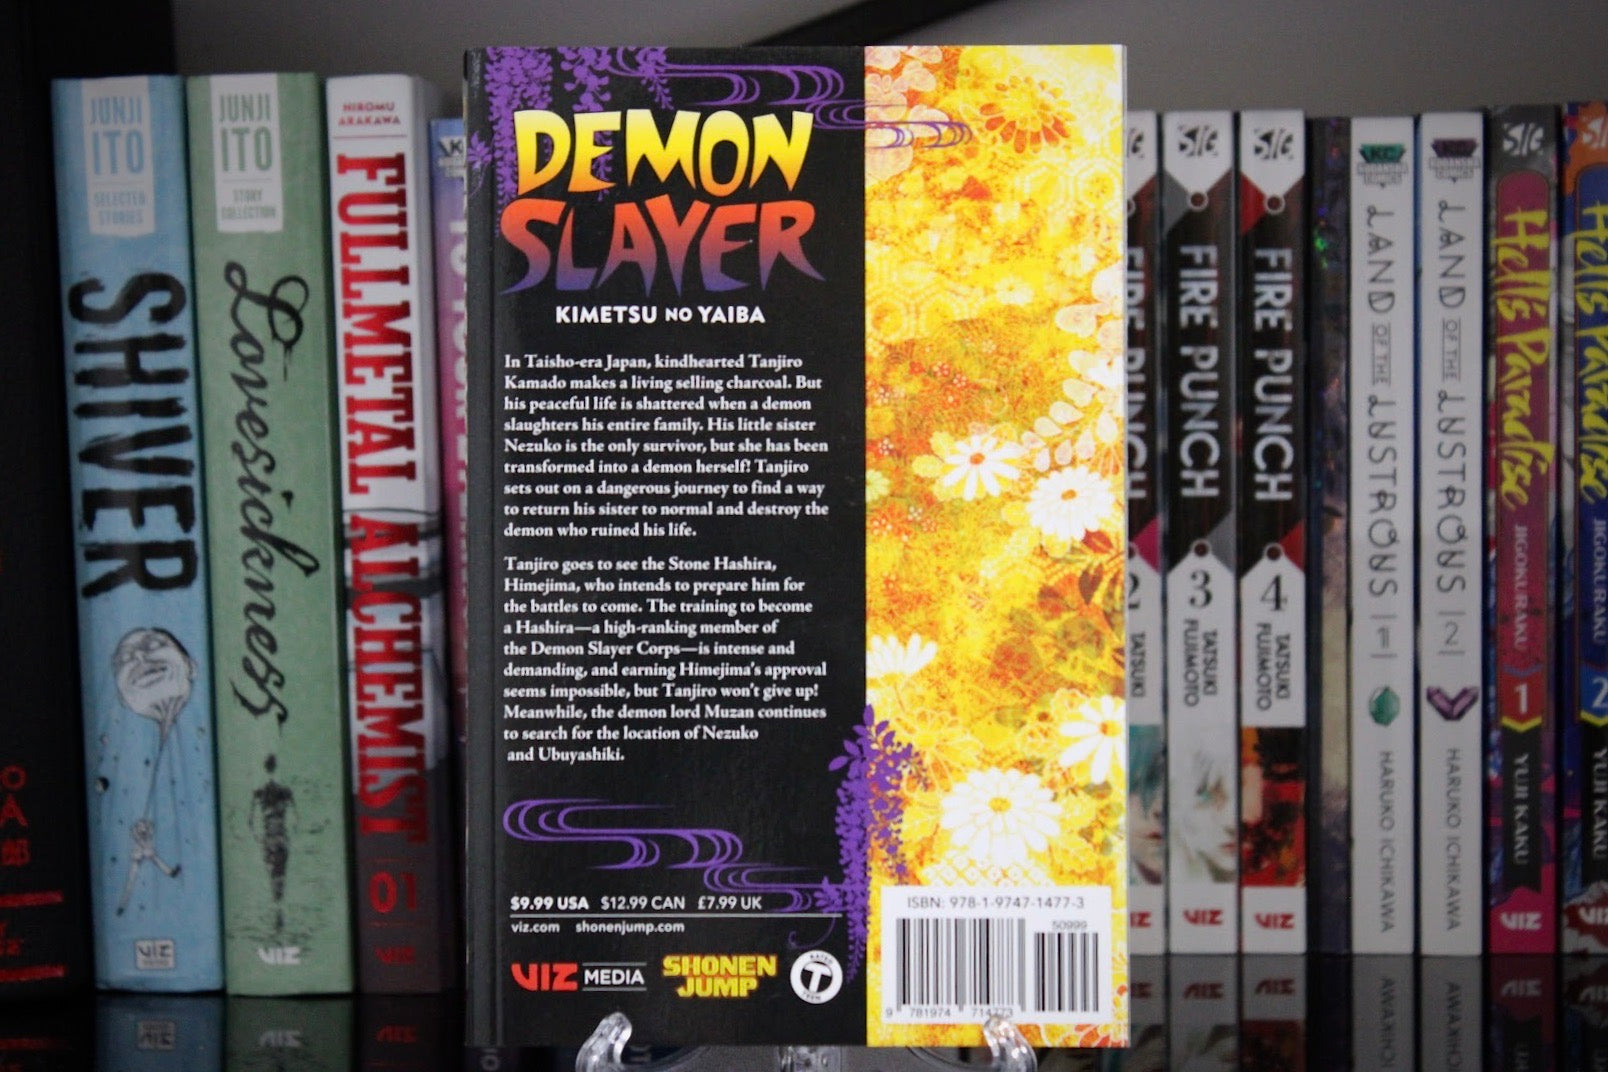 Demon Slayer: Kimetsu no Yaiba, Vol. 16 (16)